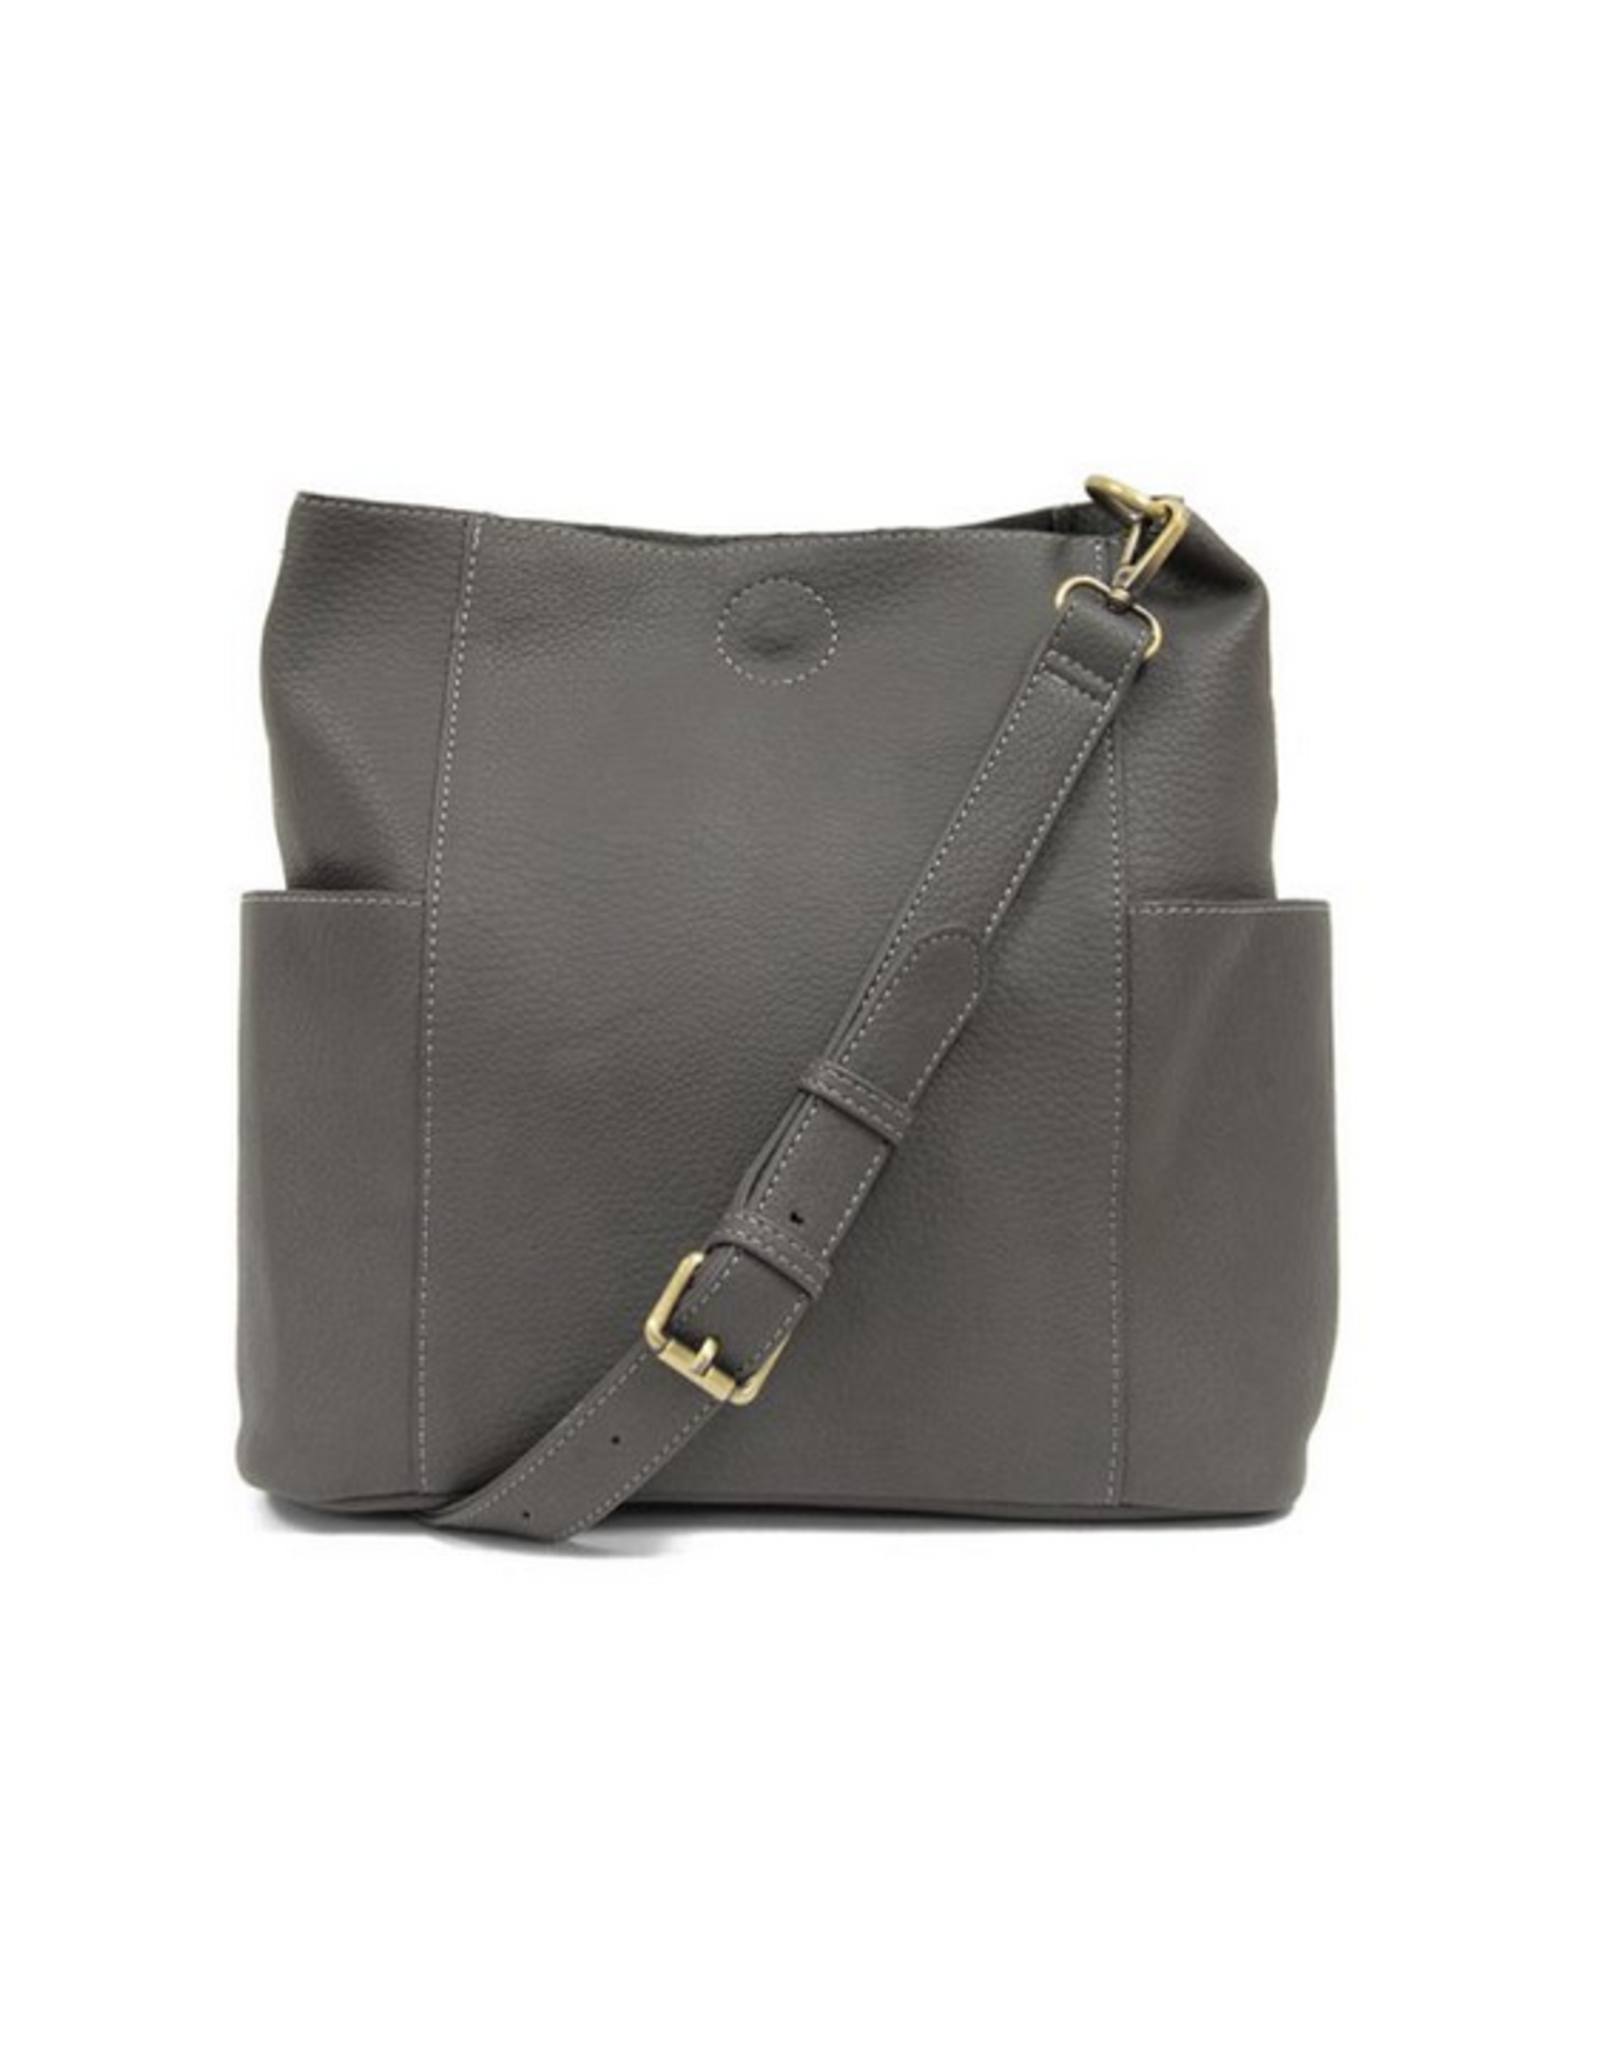 Kayleigh Side Pocket Bucket Bag - Charcoal